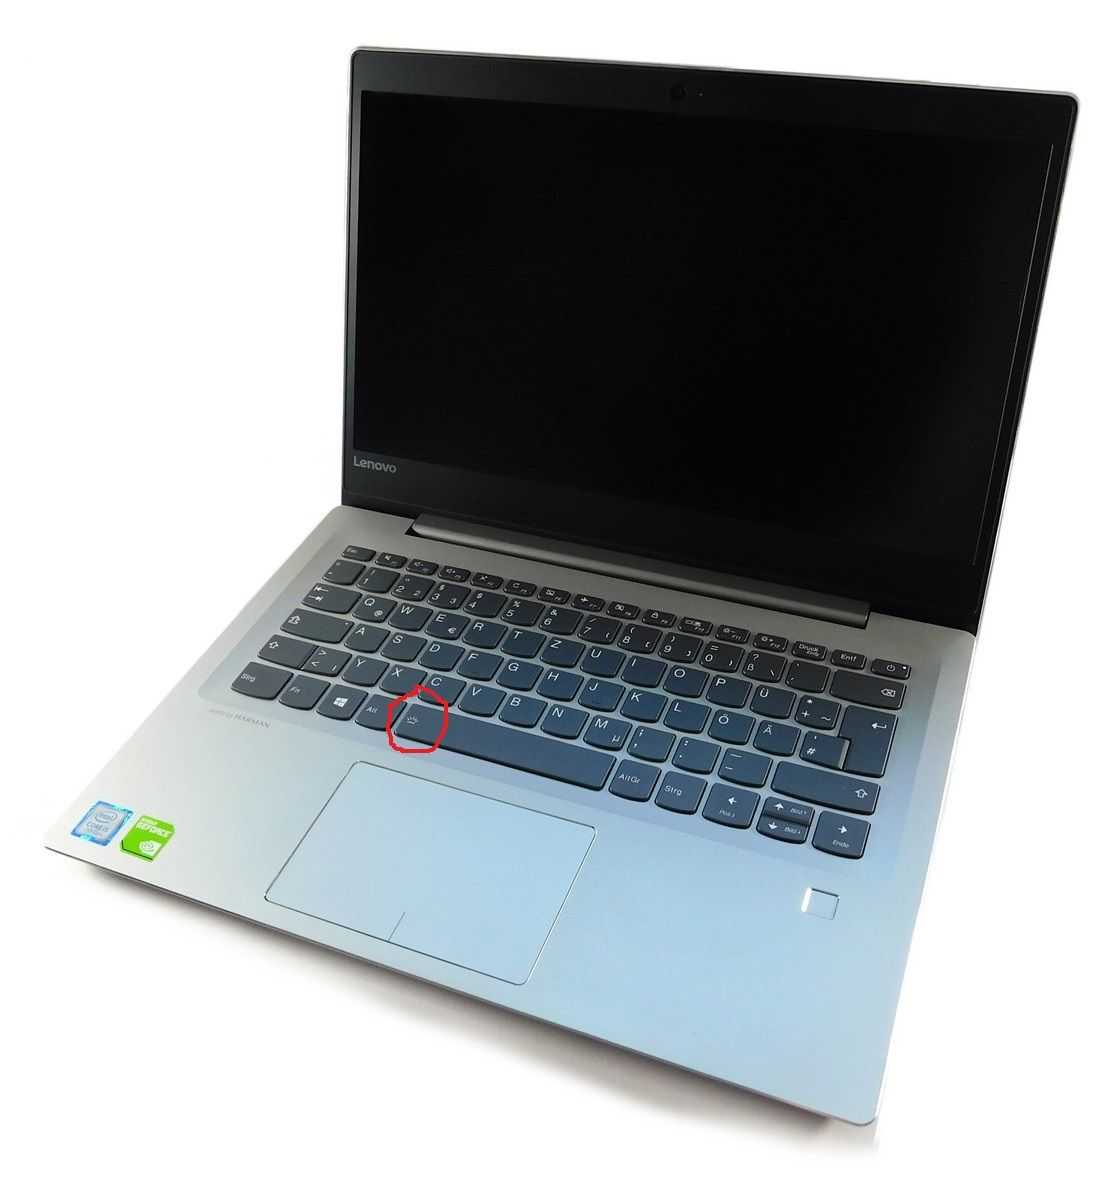 Замена экрана ноутбука lenovo ideapad 520s-14ikb (80x2000xrk) — купить, цена и характеристики, отзывы